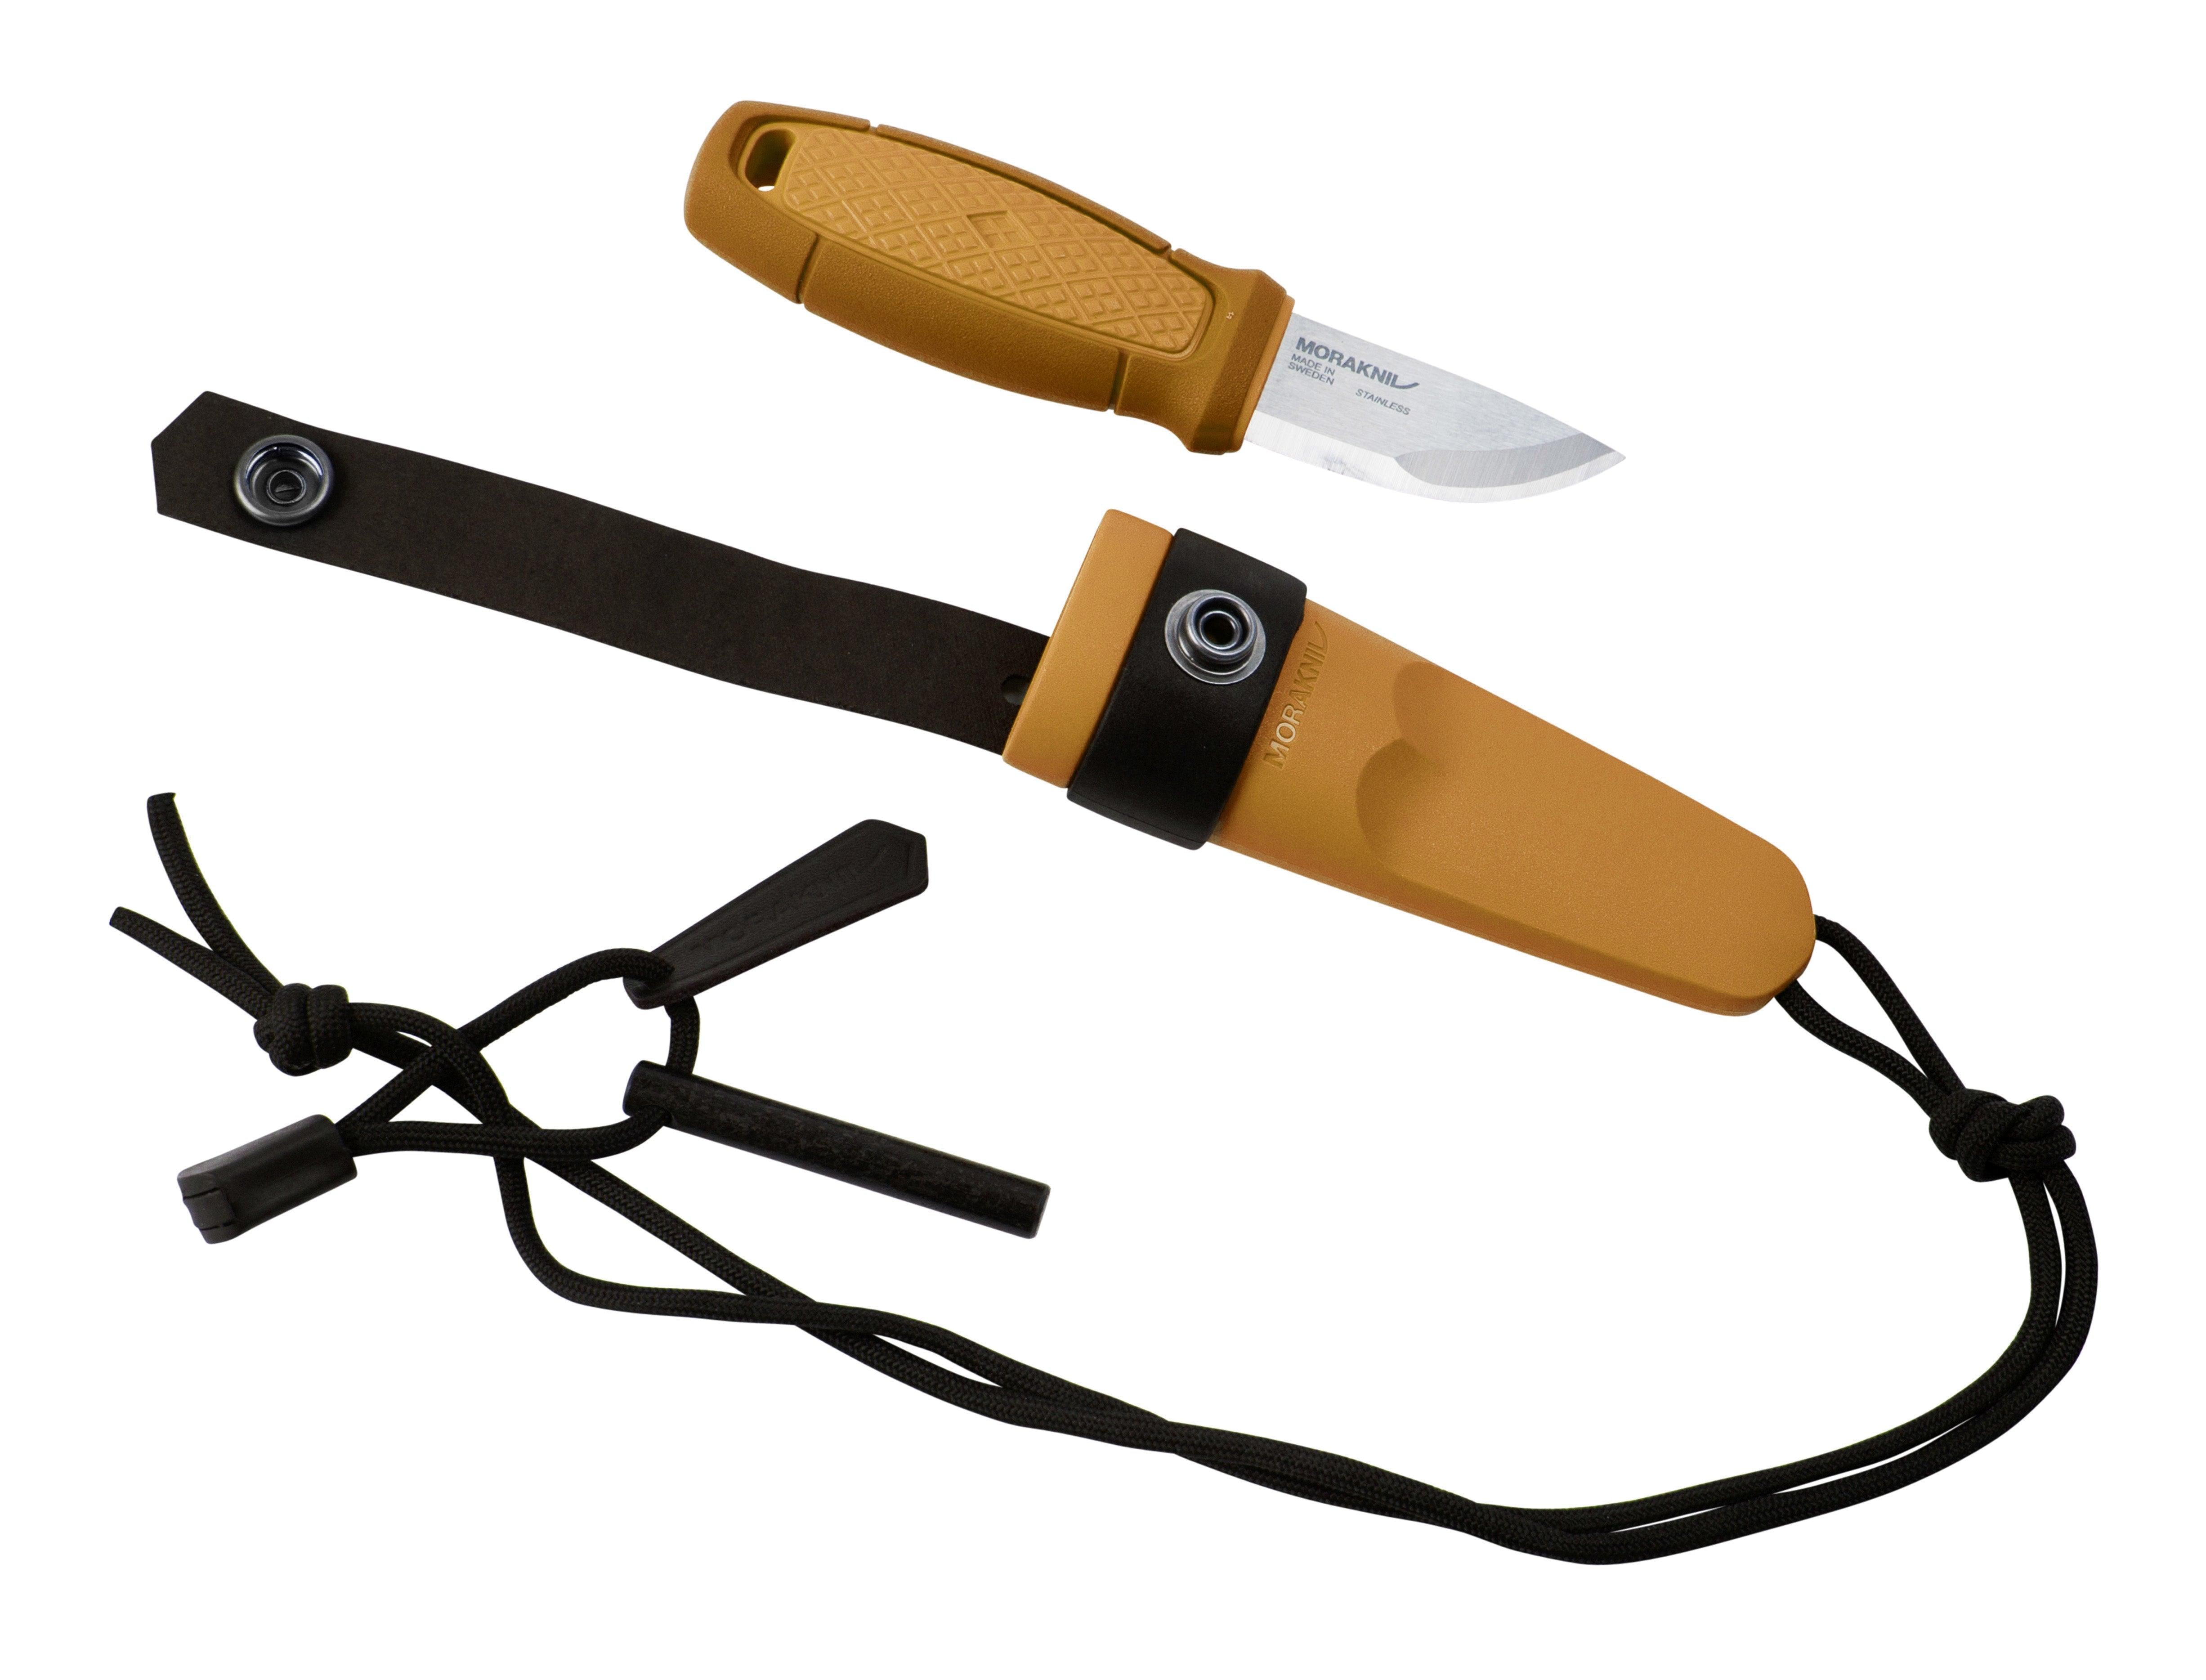 Morakniv® Eldris Stainless Knife with Firestarter Kit and Plastic Sheath